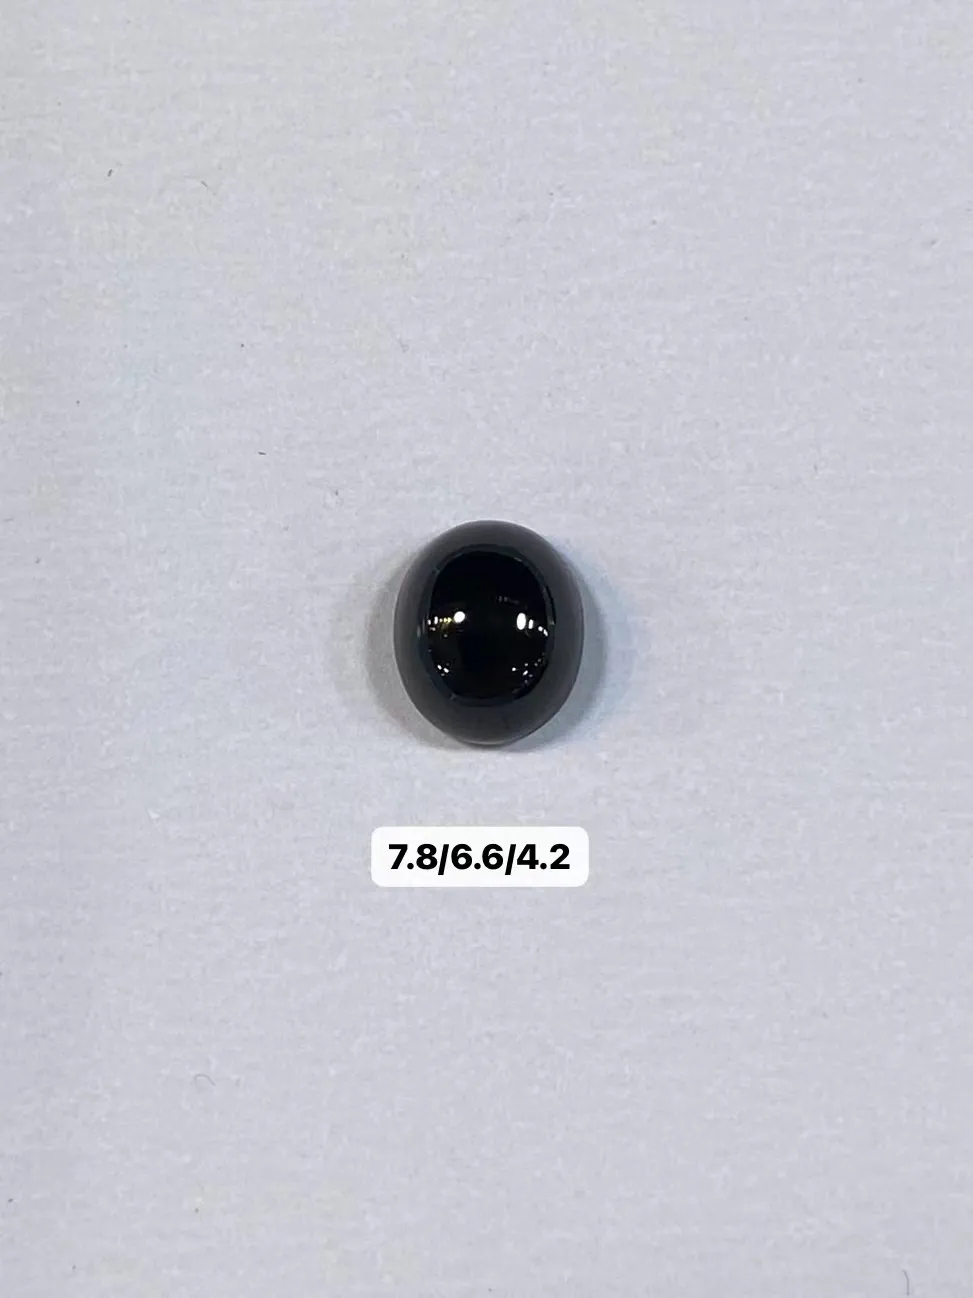 【墨翠蛋面】
黑度黑 灯打通透  品相饱满大气 尺寸7.8/6.6/4.2毫米